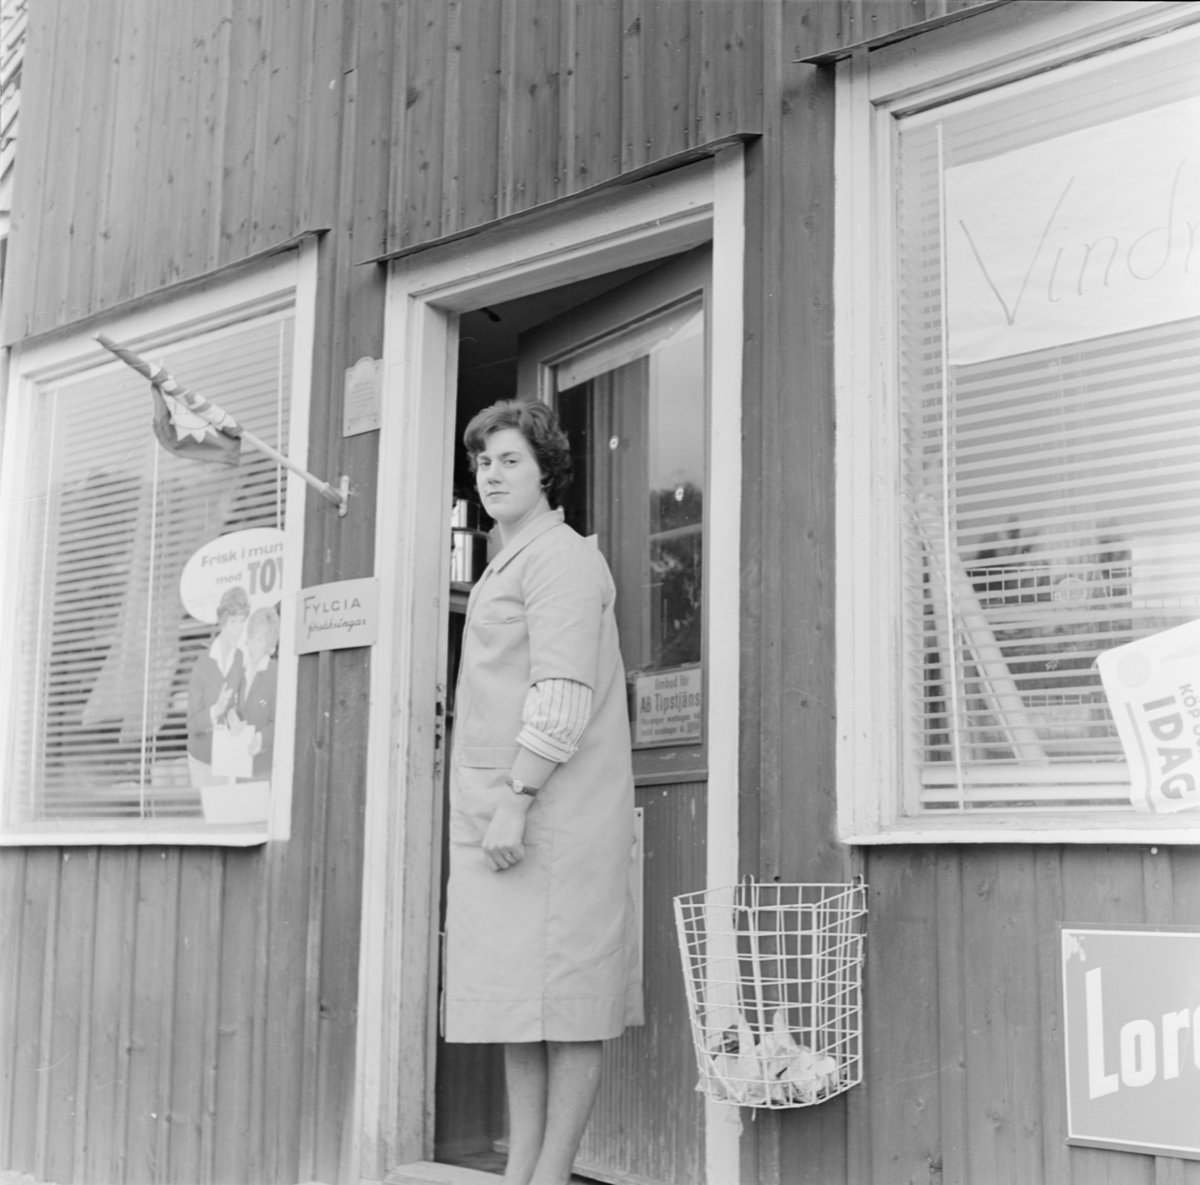 Kvinna utanför "Hagby diversehandel", Uppland 1962